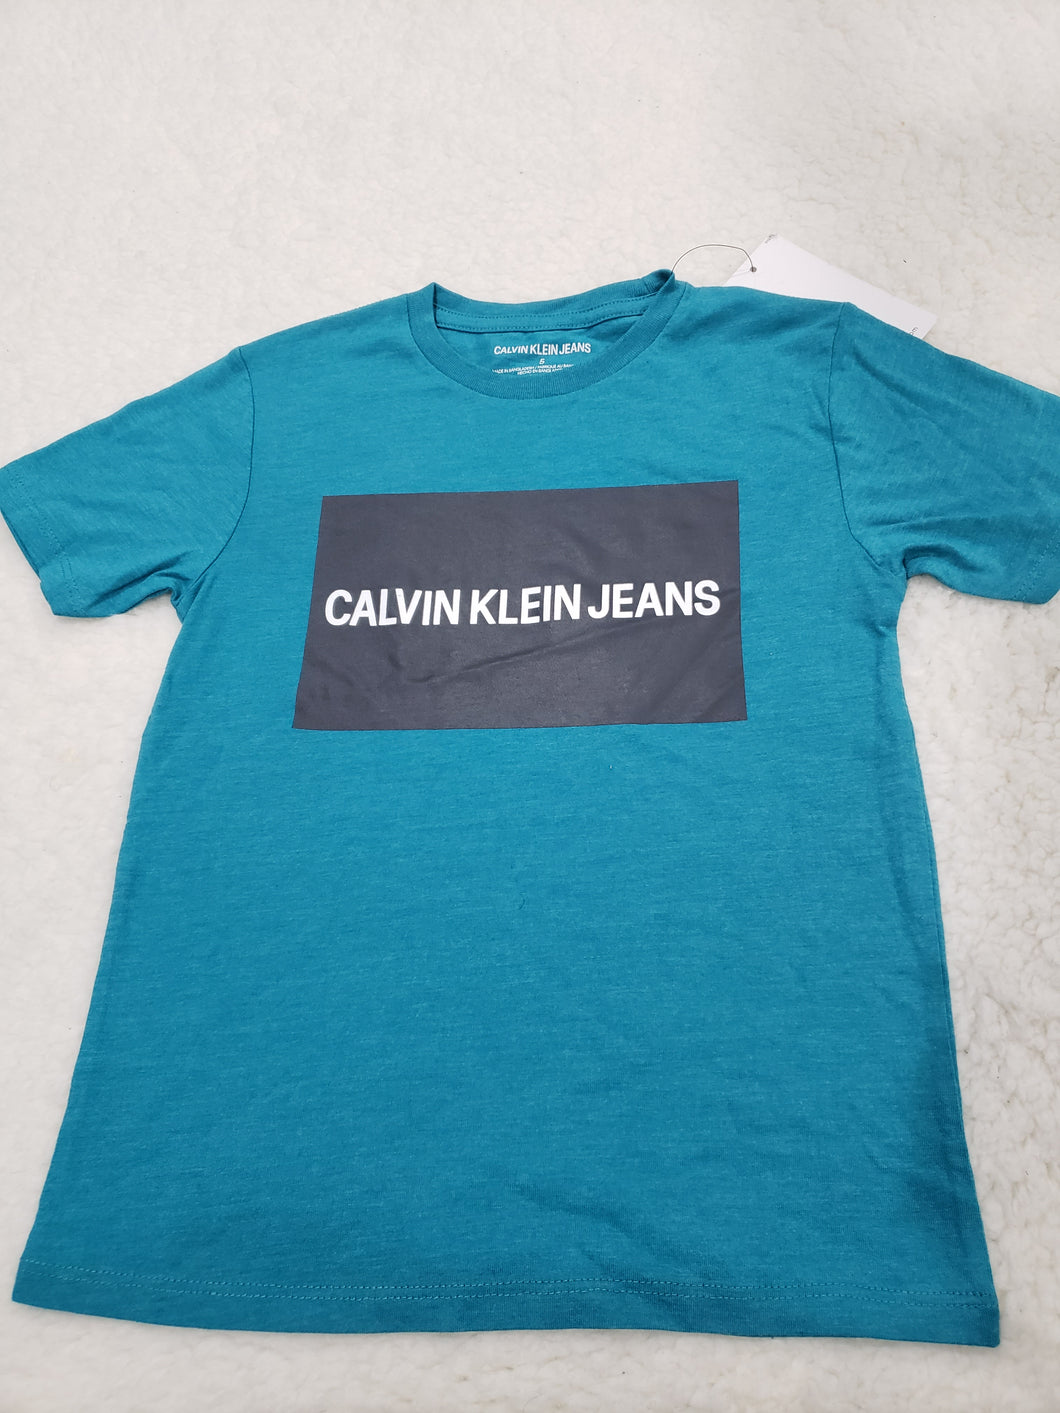 Calvin Klein Boys tshirt 5t Aqua